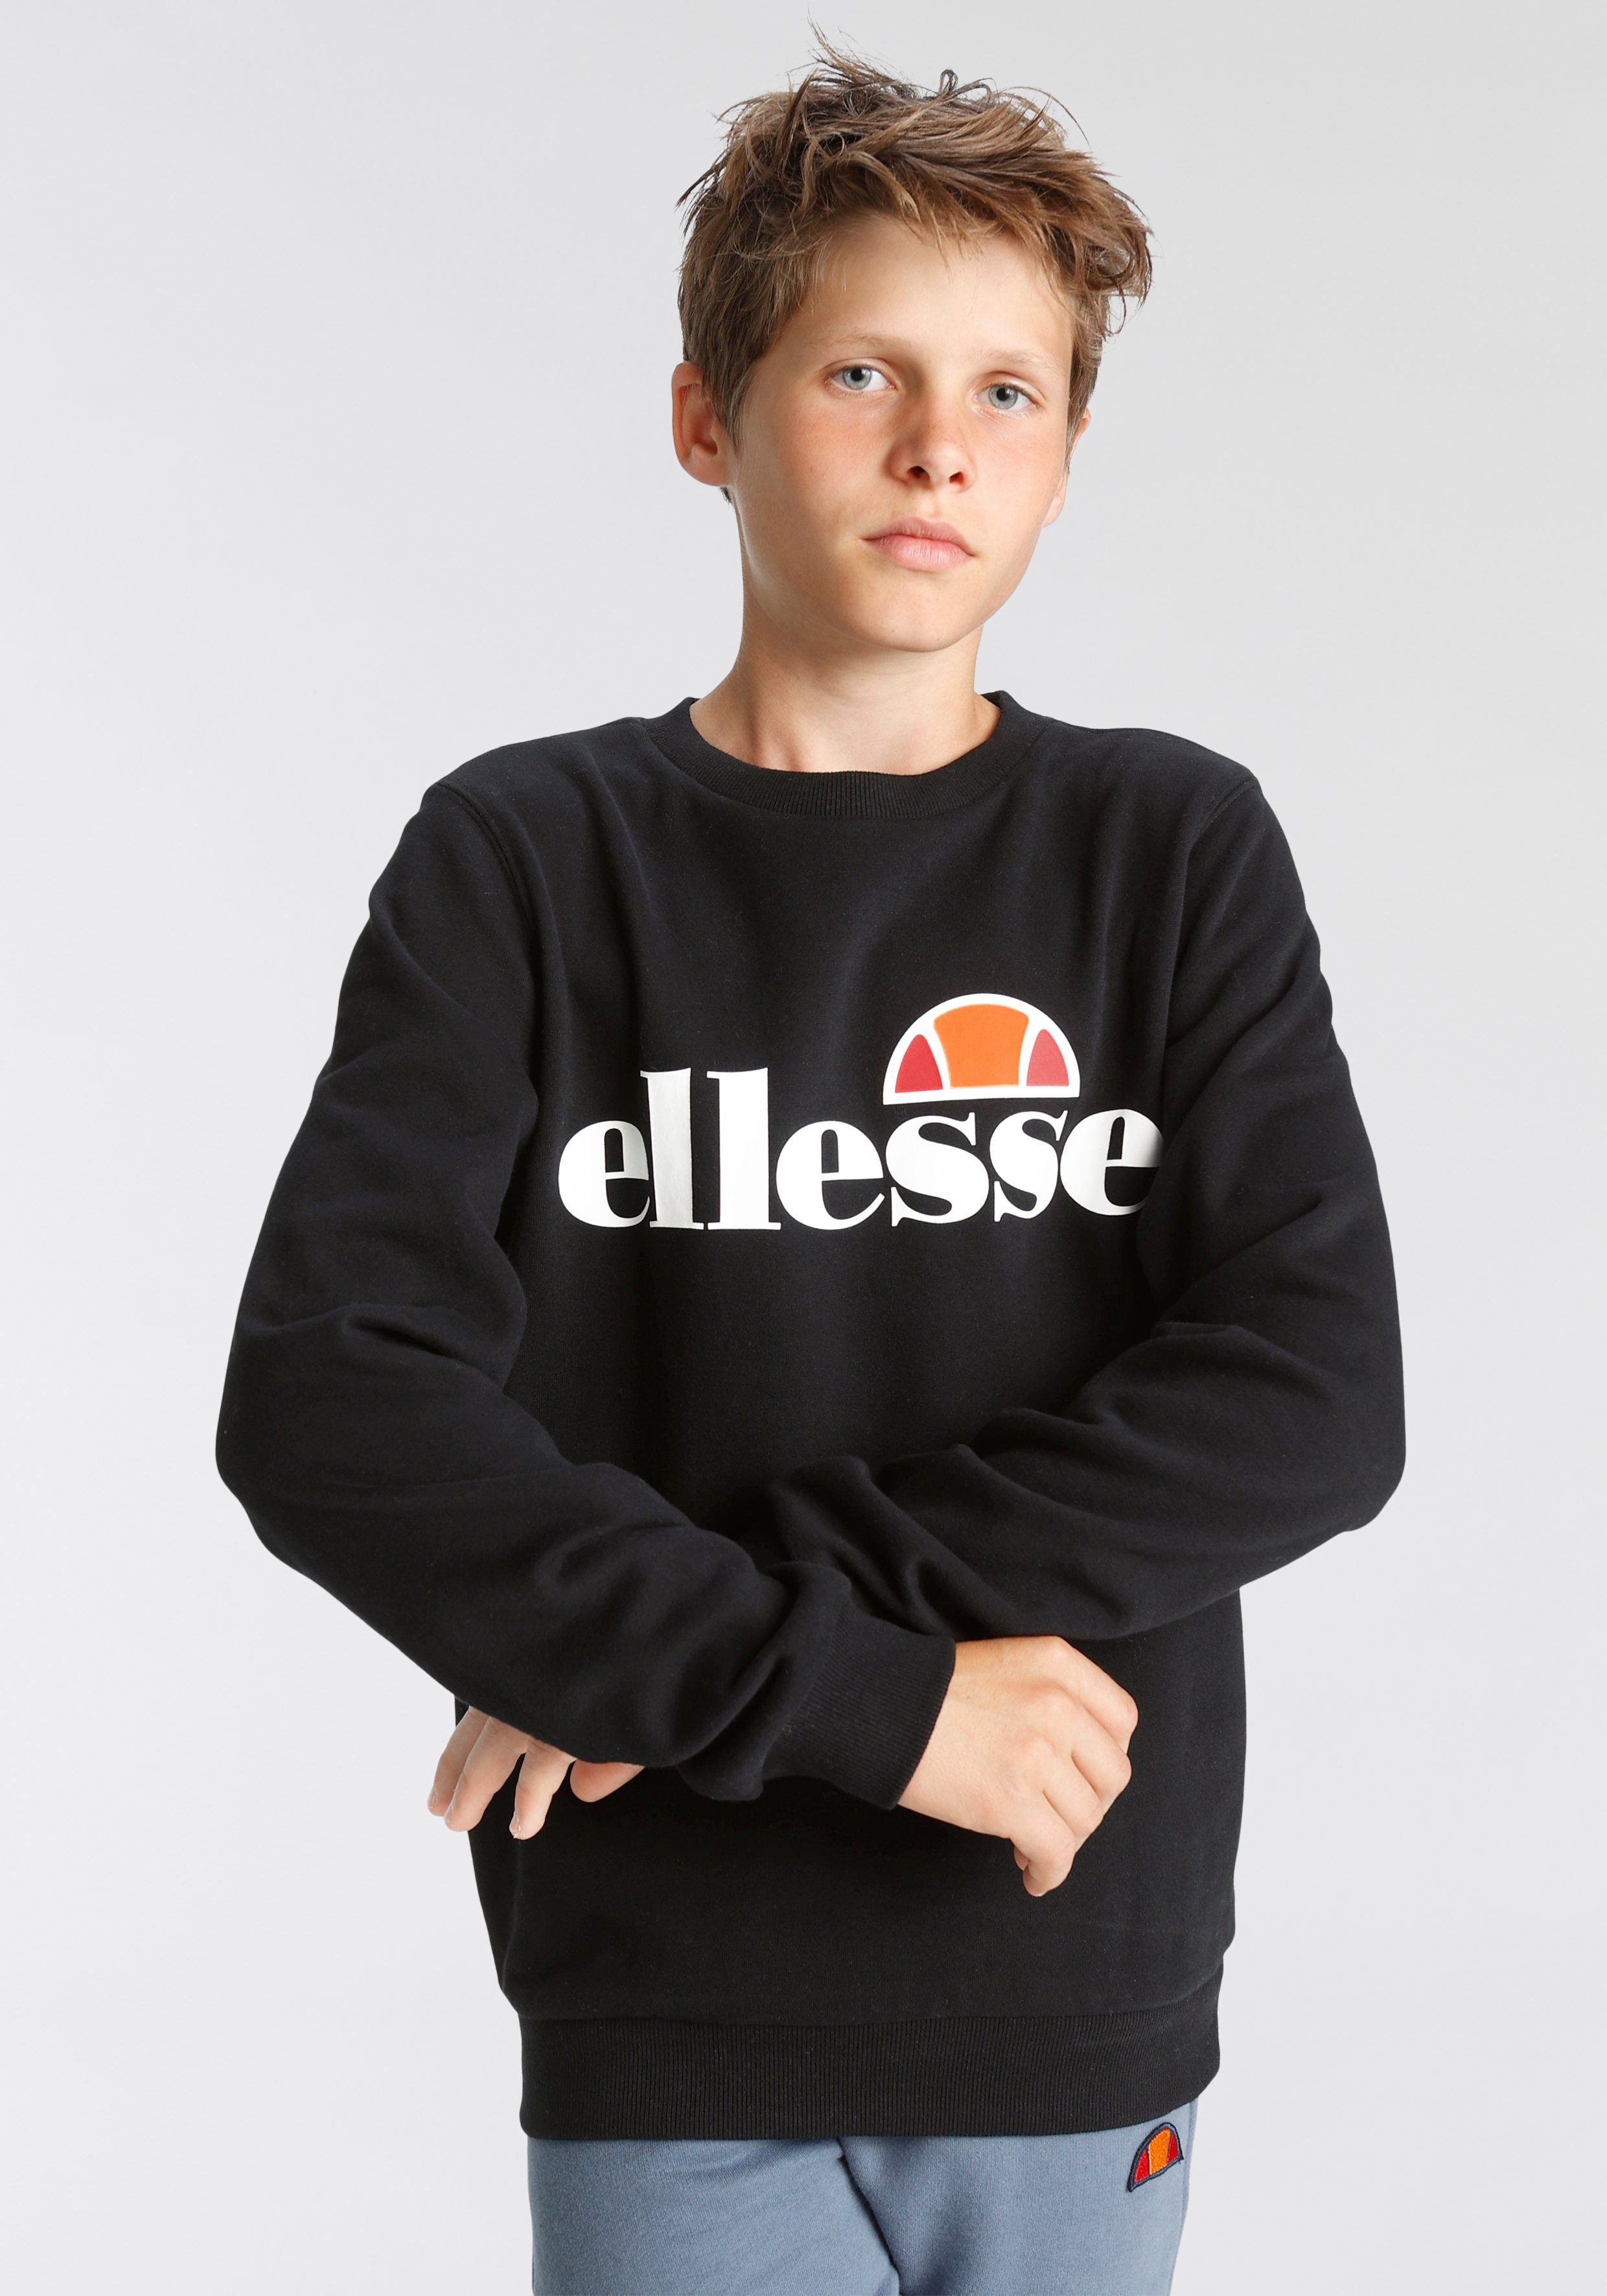 Kinder Sweatshirt für Ellesse black